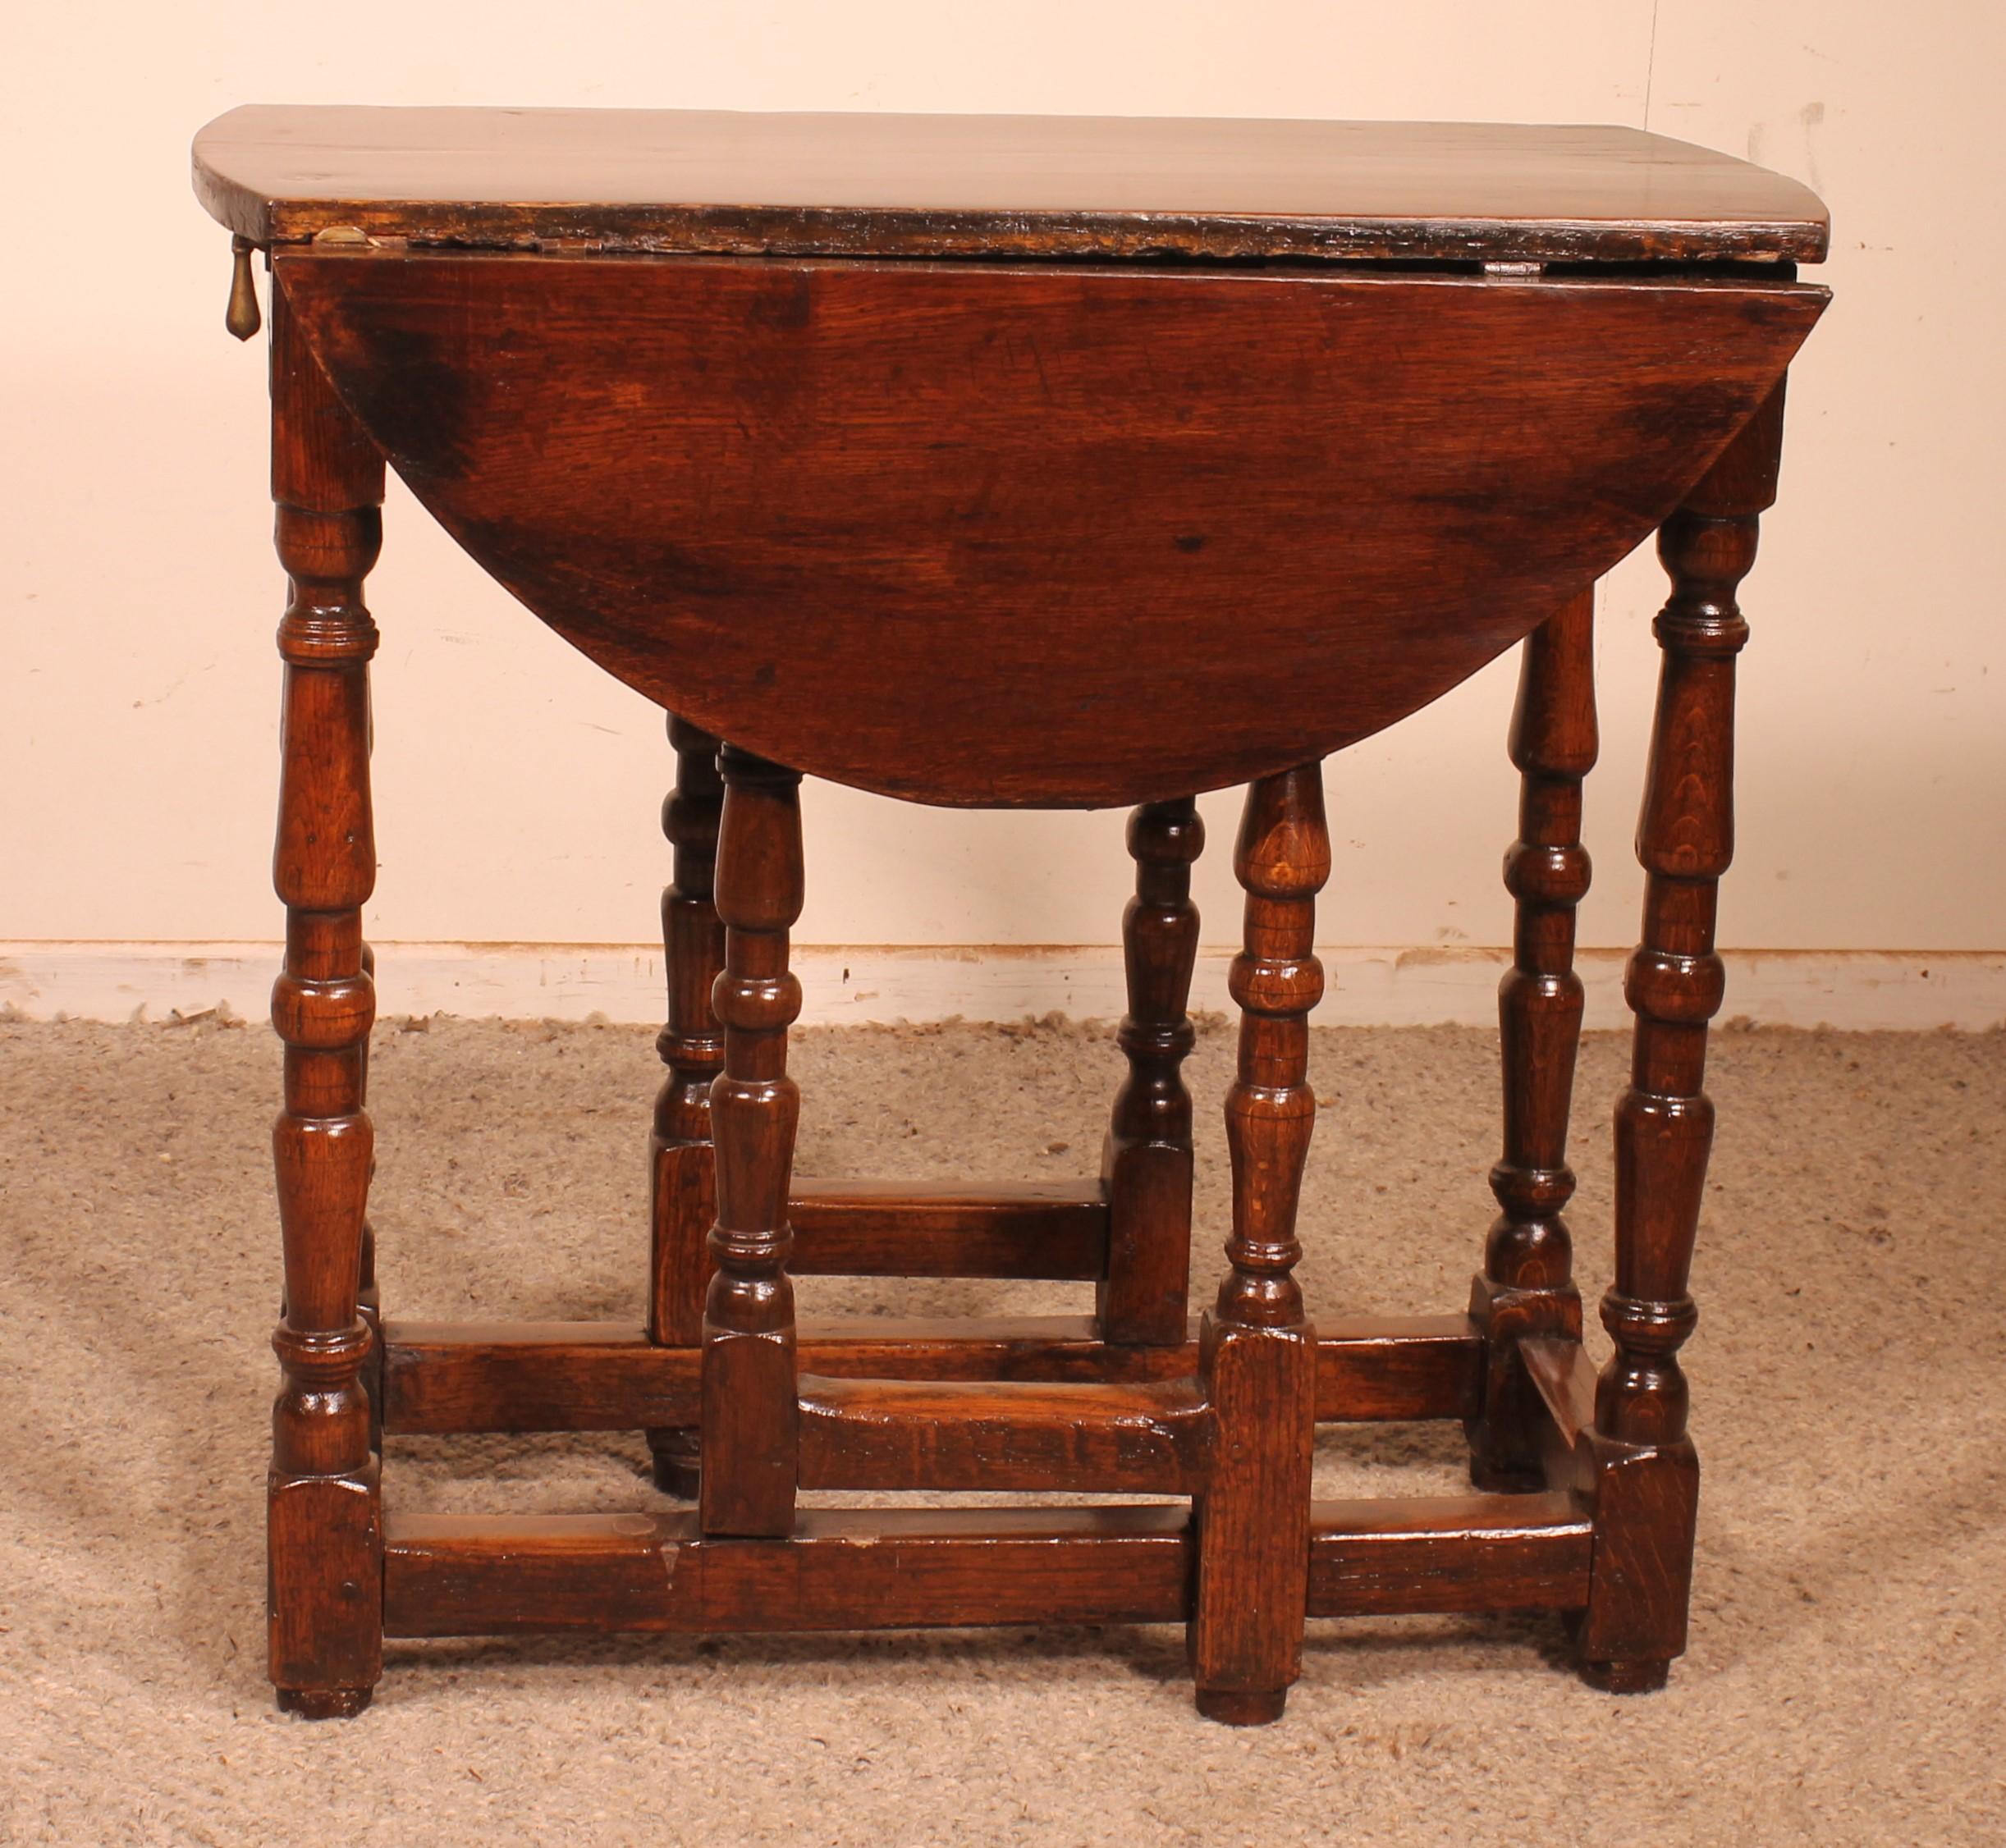 Gateleg-Tisch aus Eichenholz, frühes 18. Jahrhundert (18. Jahrhundert und früher)